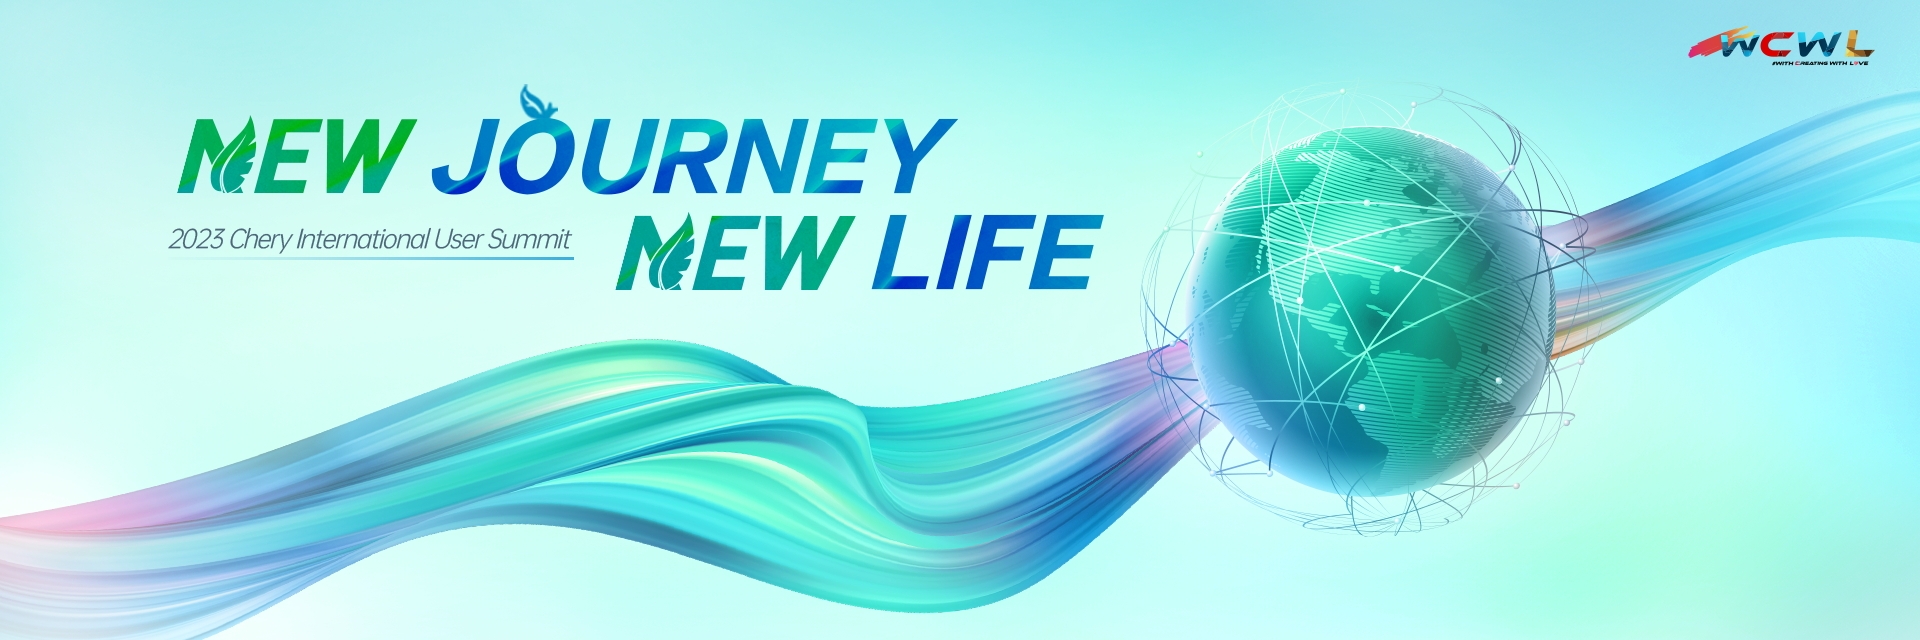 New Journey - New Life